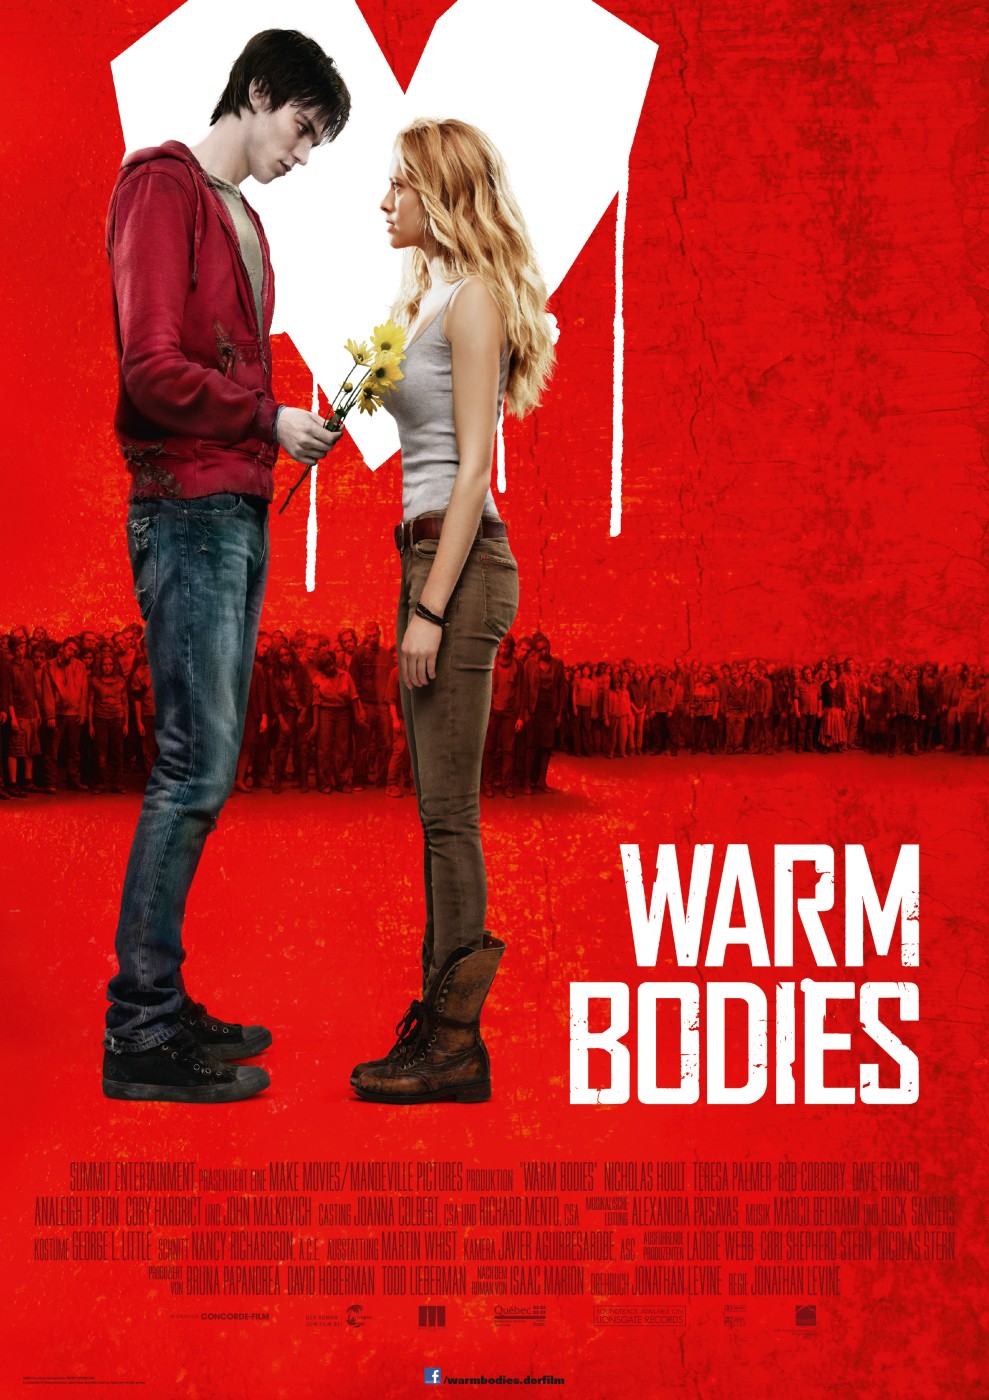 FULL MOVIE: Warm Bodies (2013)